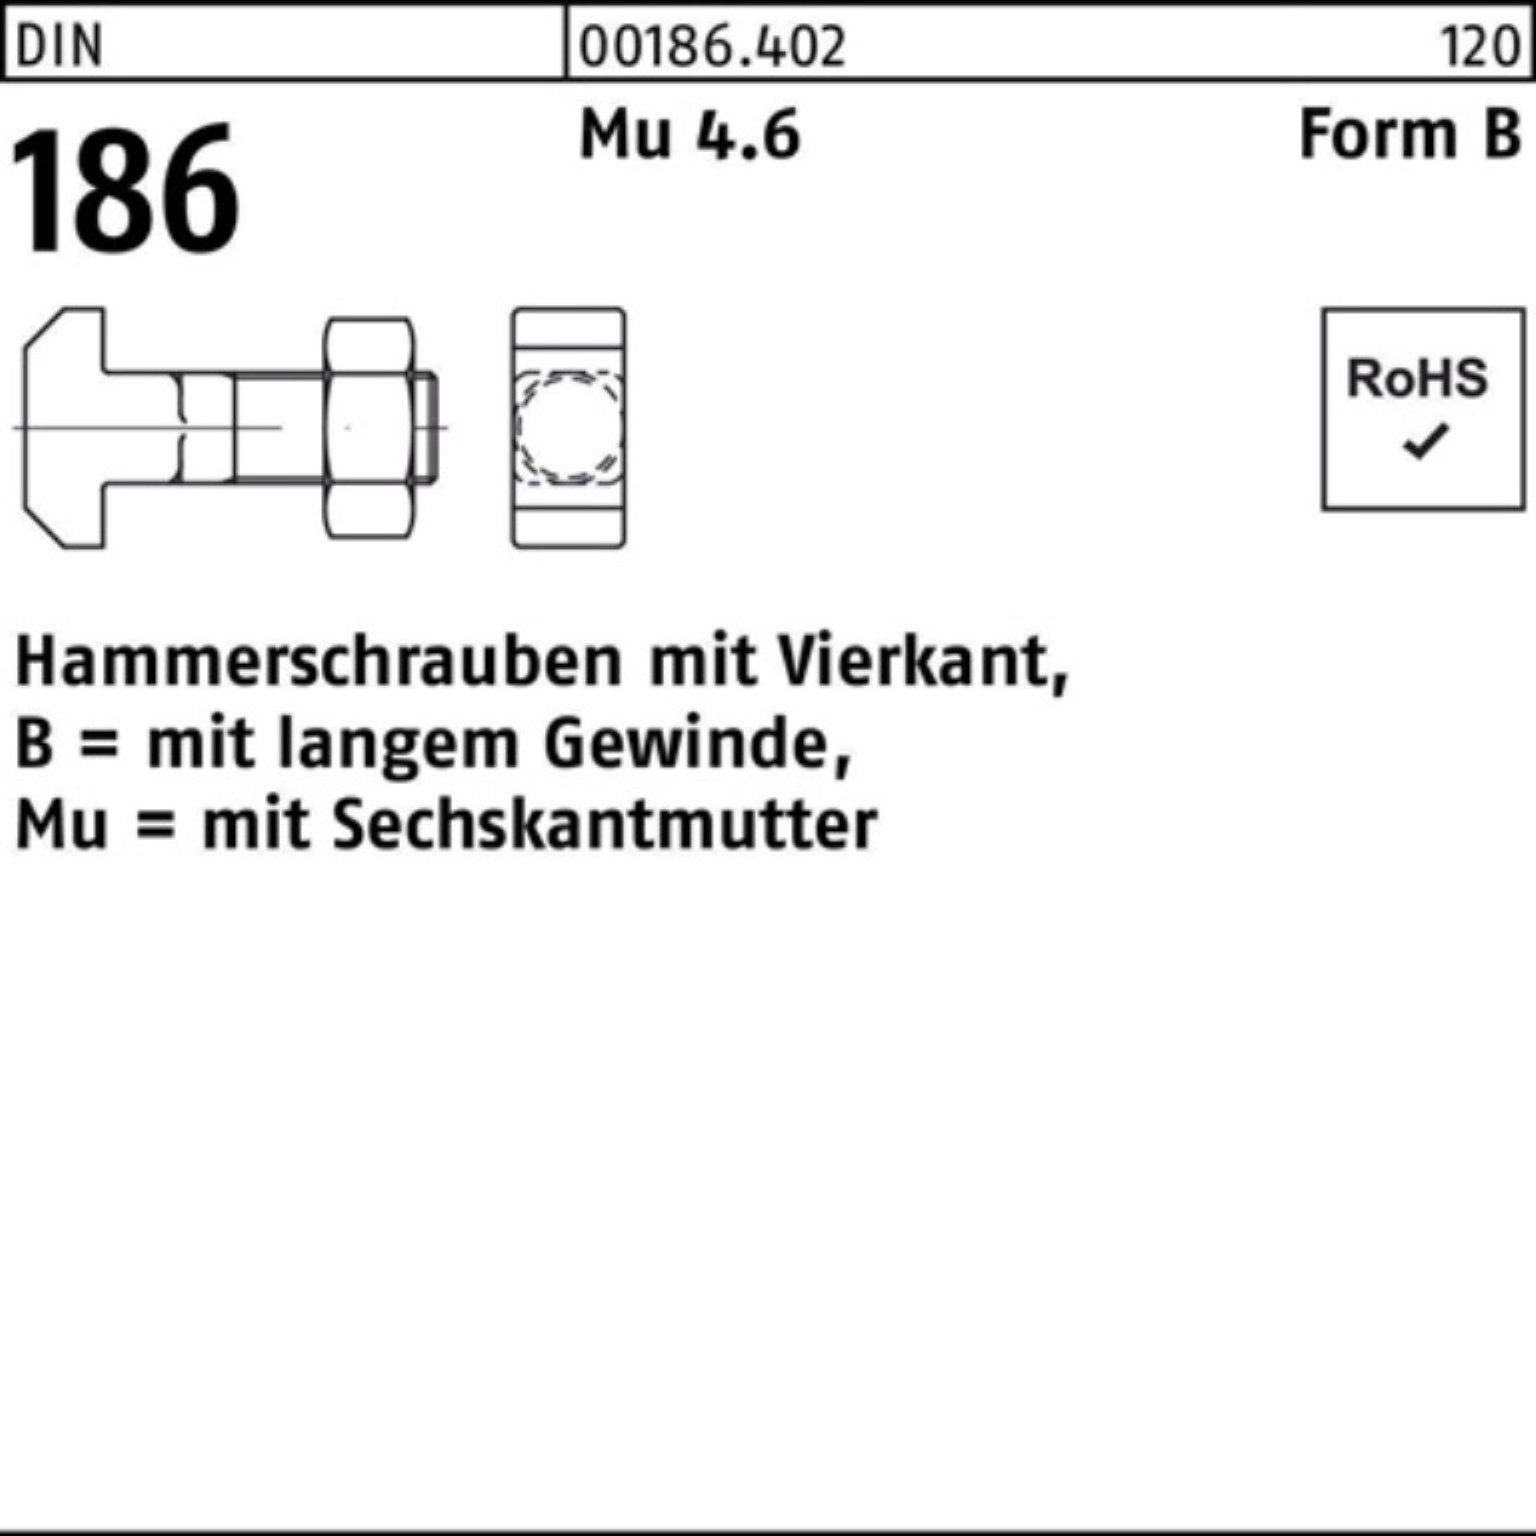 Reyher Schraube 100er Pack Hammerschraube DIN 186 FormB Vierkant 6-ktmutter BM 20x 60